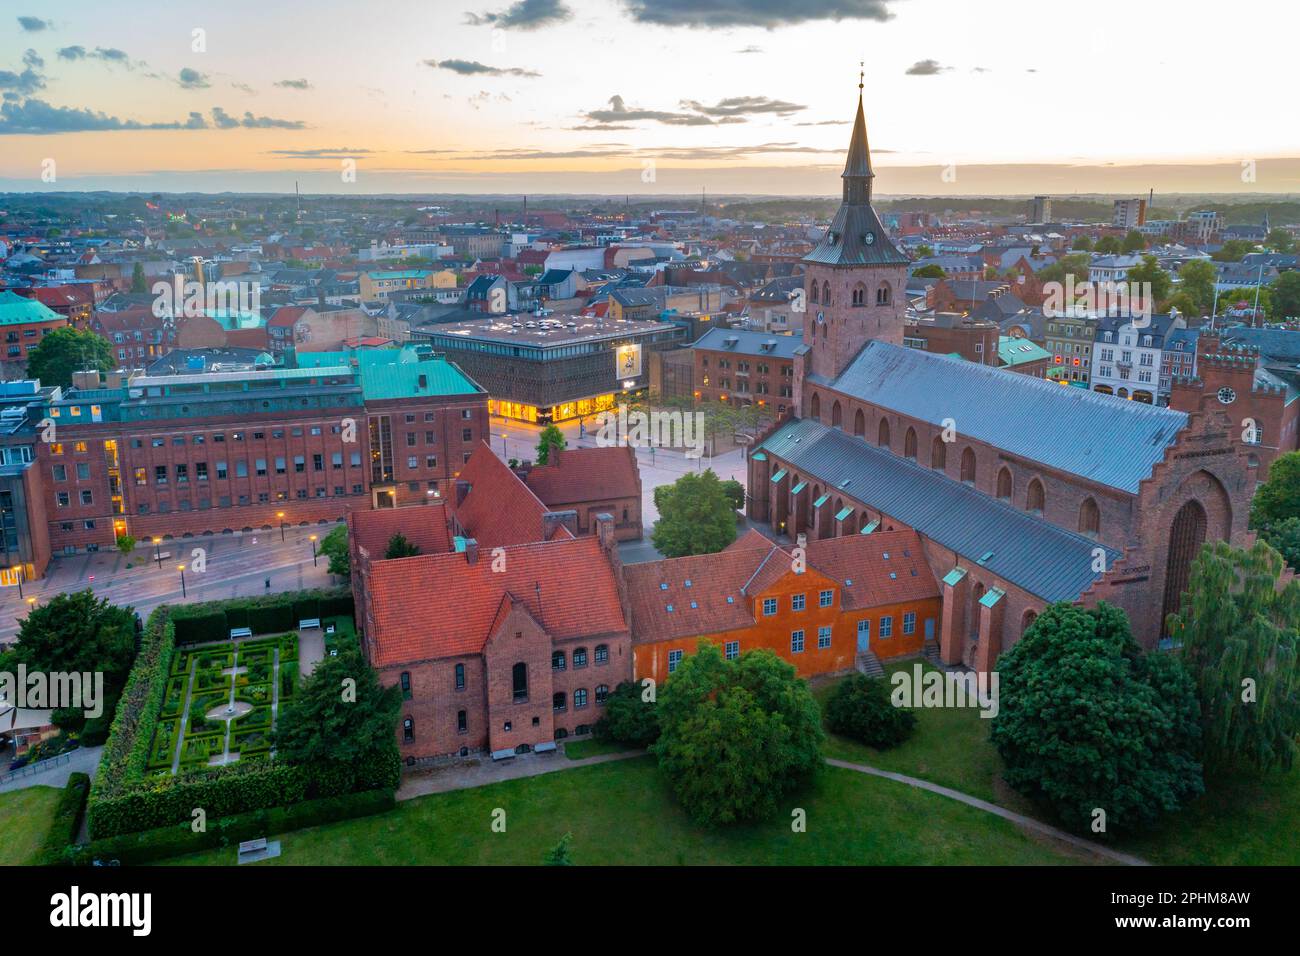 Vue panoramique sur la rue au coucher du soleil Cathédrale de Canute dans la ville danoise d'Odense. Banque D'Images